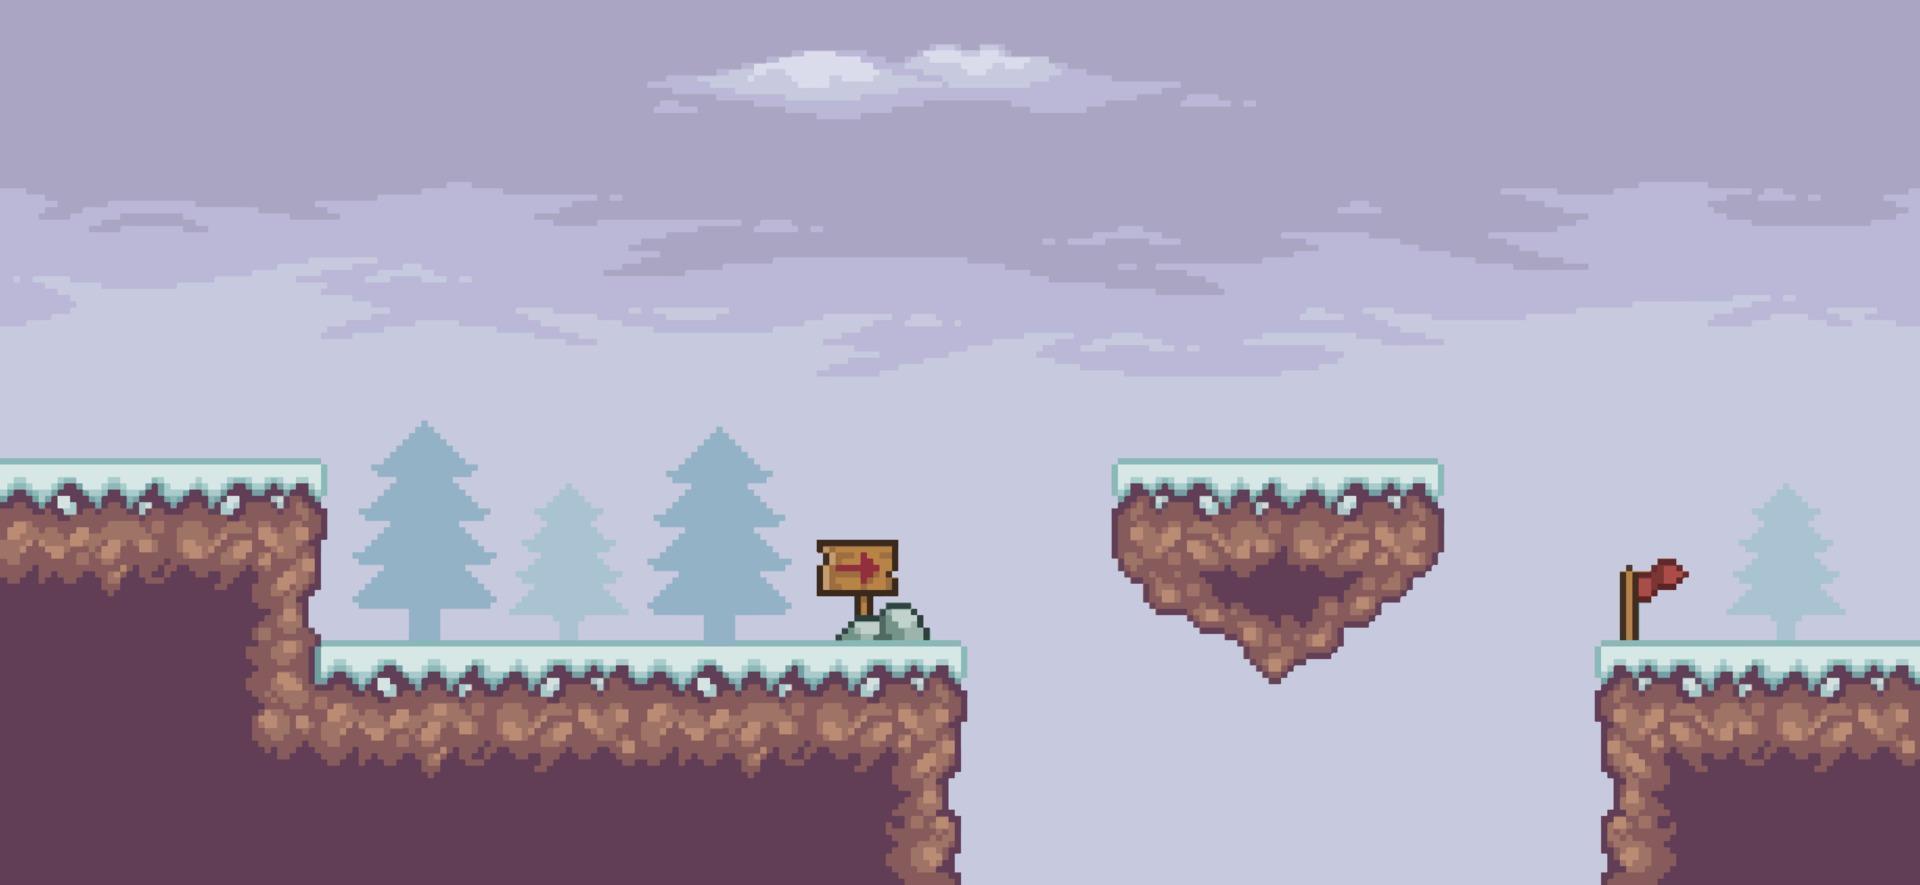 pixelart-spelscène in sneeuw met drijvend platform, pijnbomen, wolken en 8-bits achtergrond vector